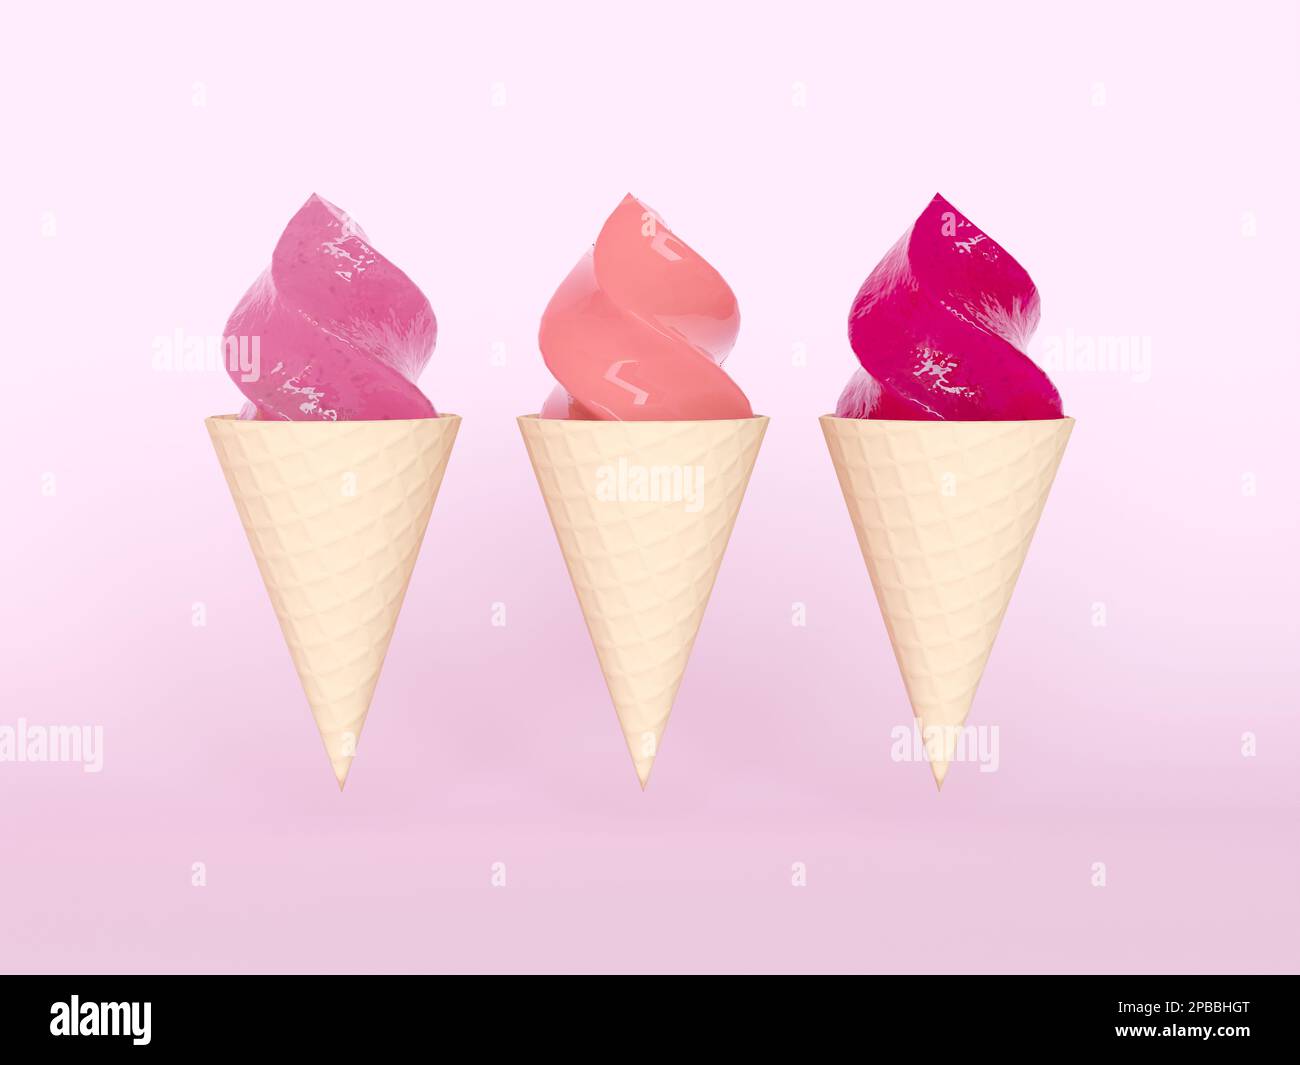 Auswahl an Eiscreme in einem Zapfen isoliert auf pinkfarbenem Hintergrund. Eis mit verschiedenen Geschmacksrichtungen, Vorderansicht. Ein Set köstlicher mehrfarbiger Eiscreme. Stockfoto